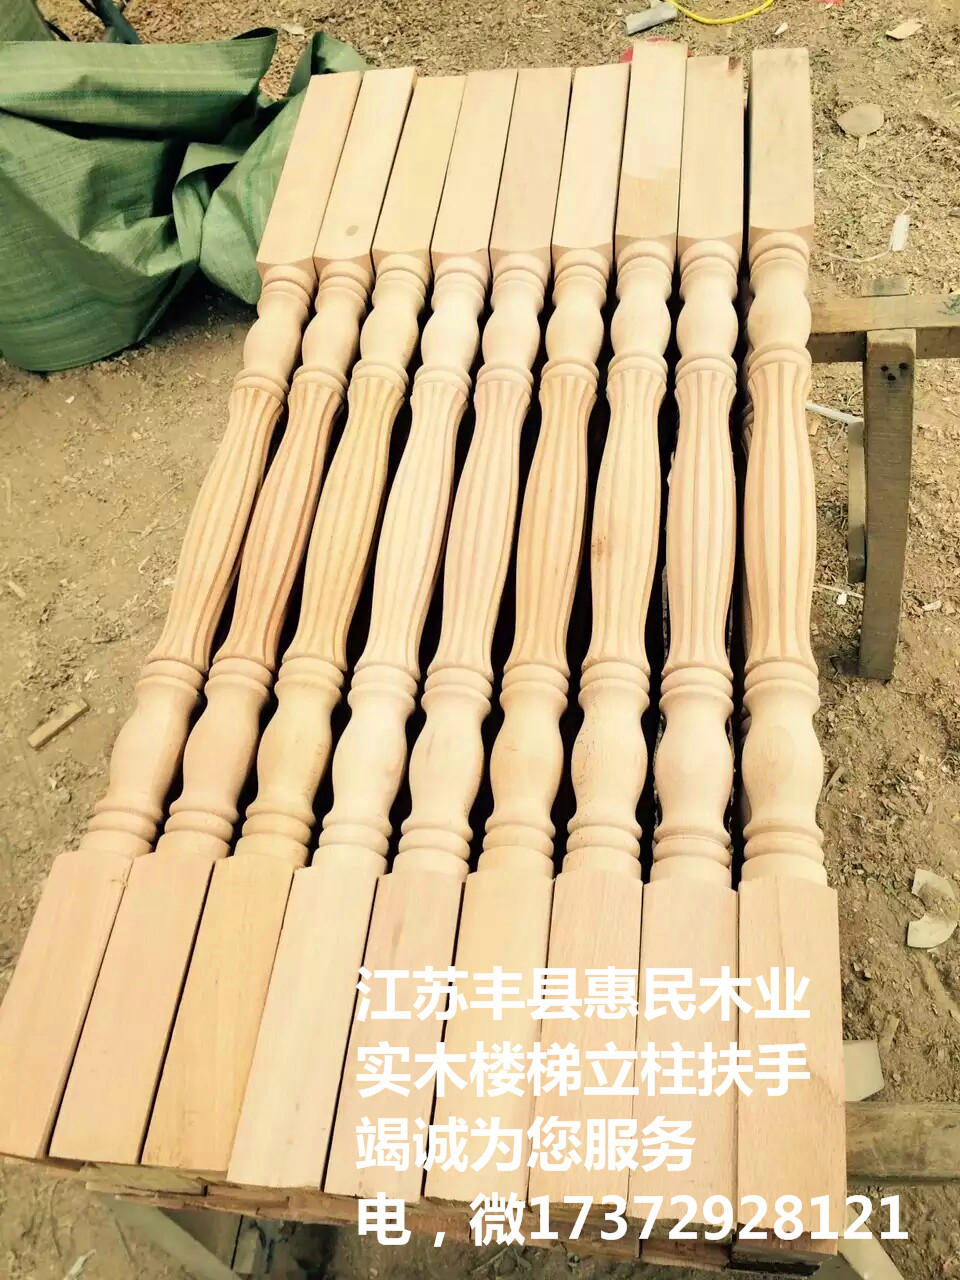 大小立柱扶手 制作和批发红榉 水曲柳等各种实木楼梯 红橡 弯头 丰富的设计理念和经验 橡胶木 主要生产